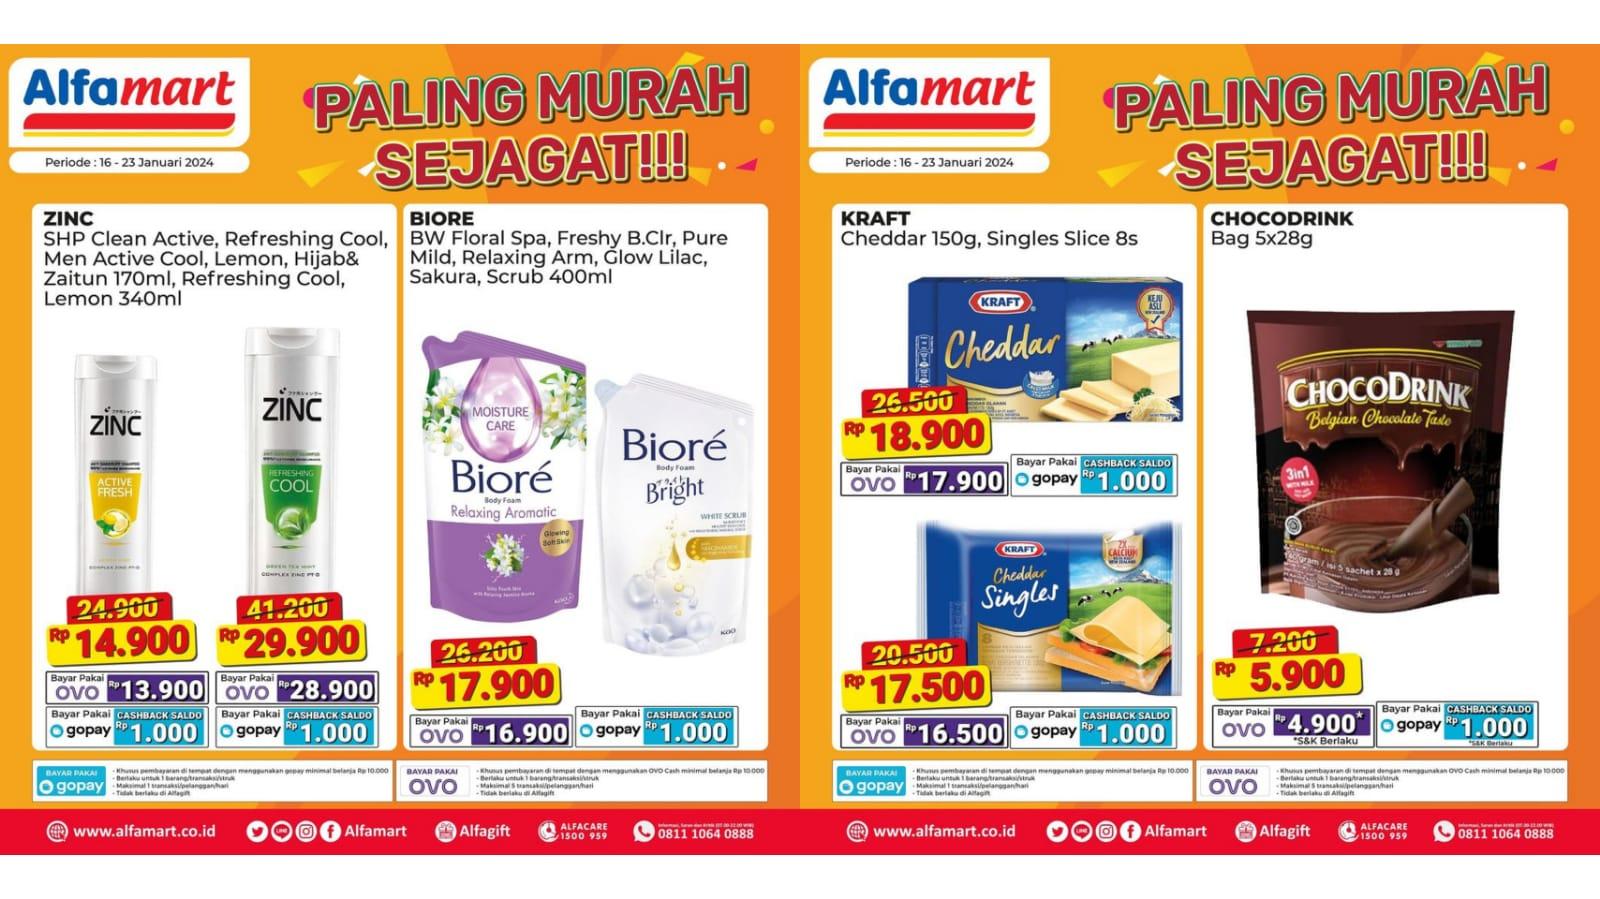 murah sejagat promo alfamart 17-23 januari 2024,biore bodywash rp 21.900,pudding susu rp 8.500